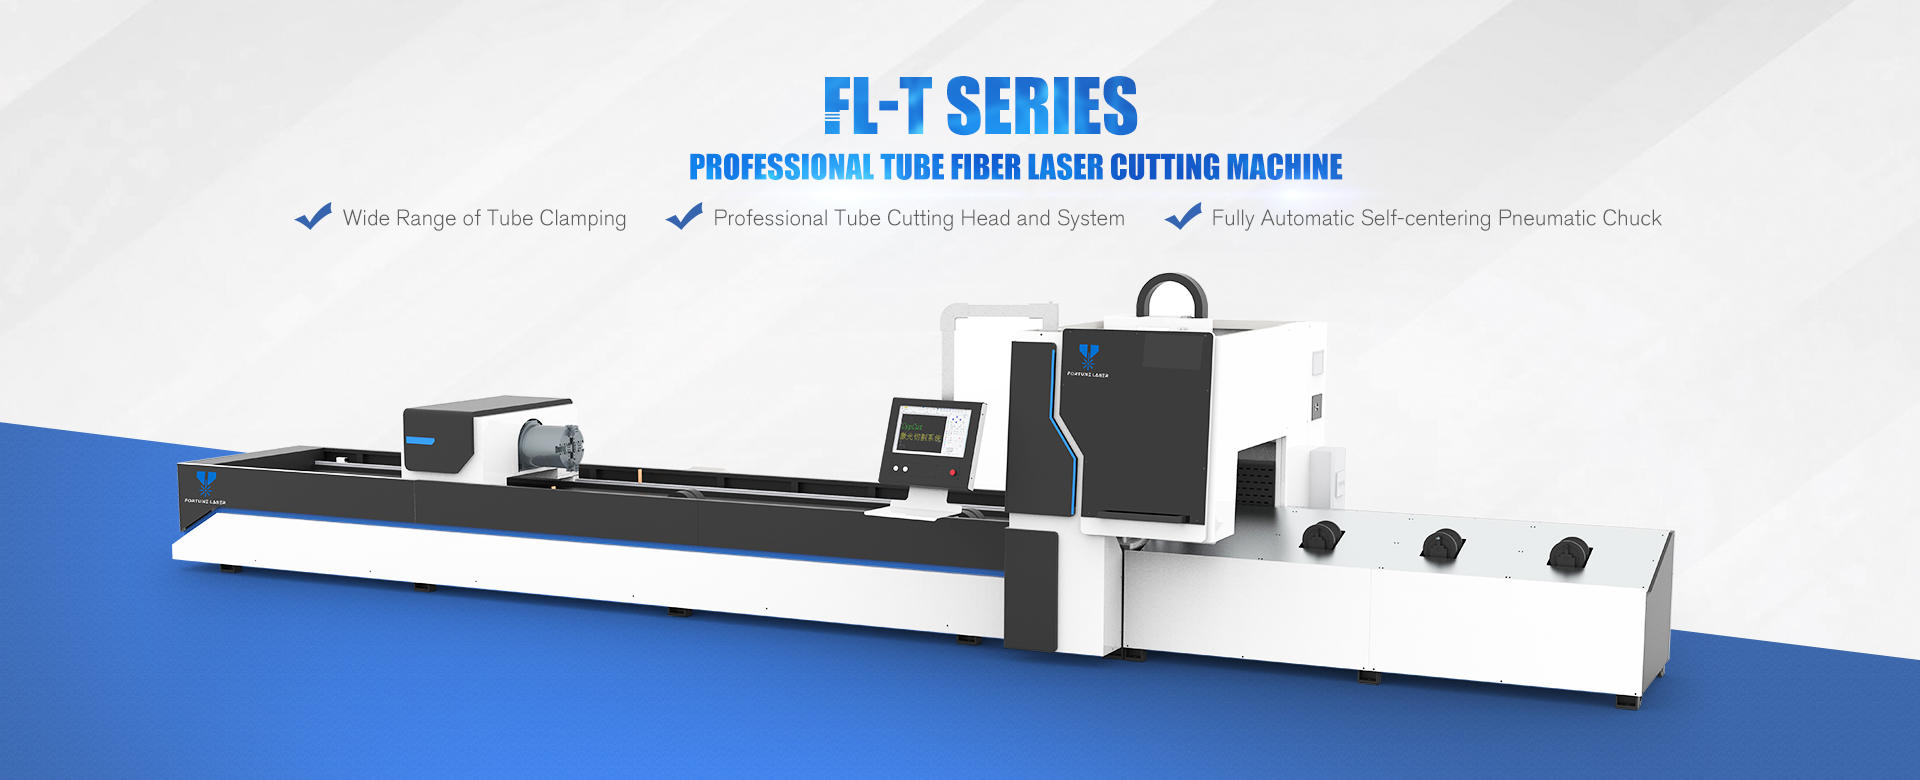 Automatic Feeding Laser Cutting Machine